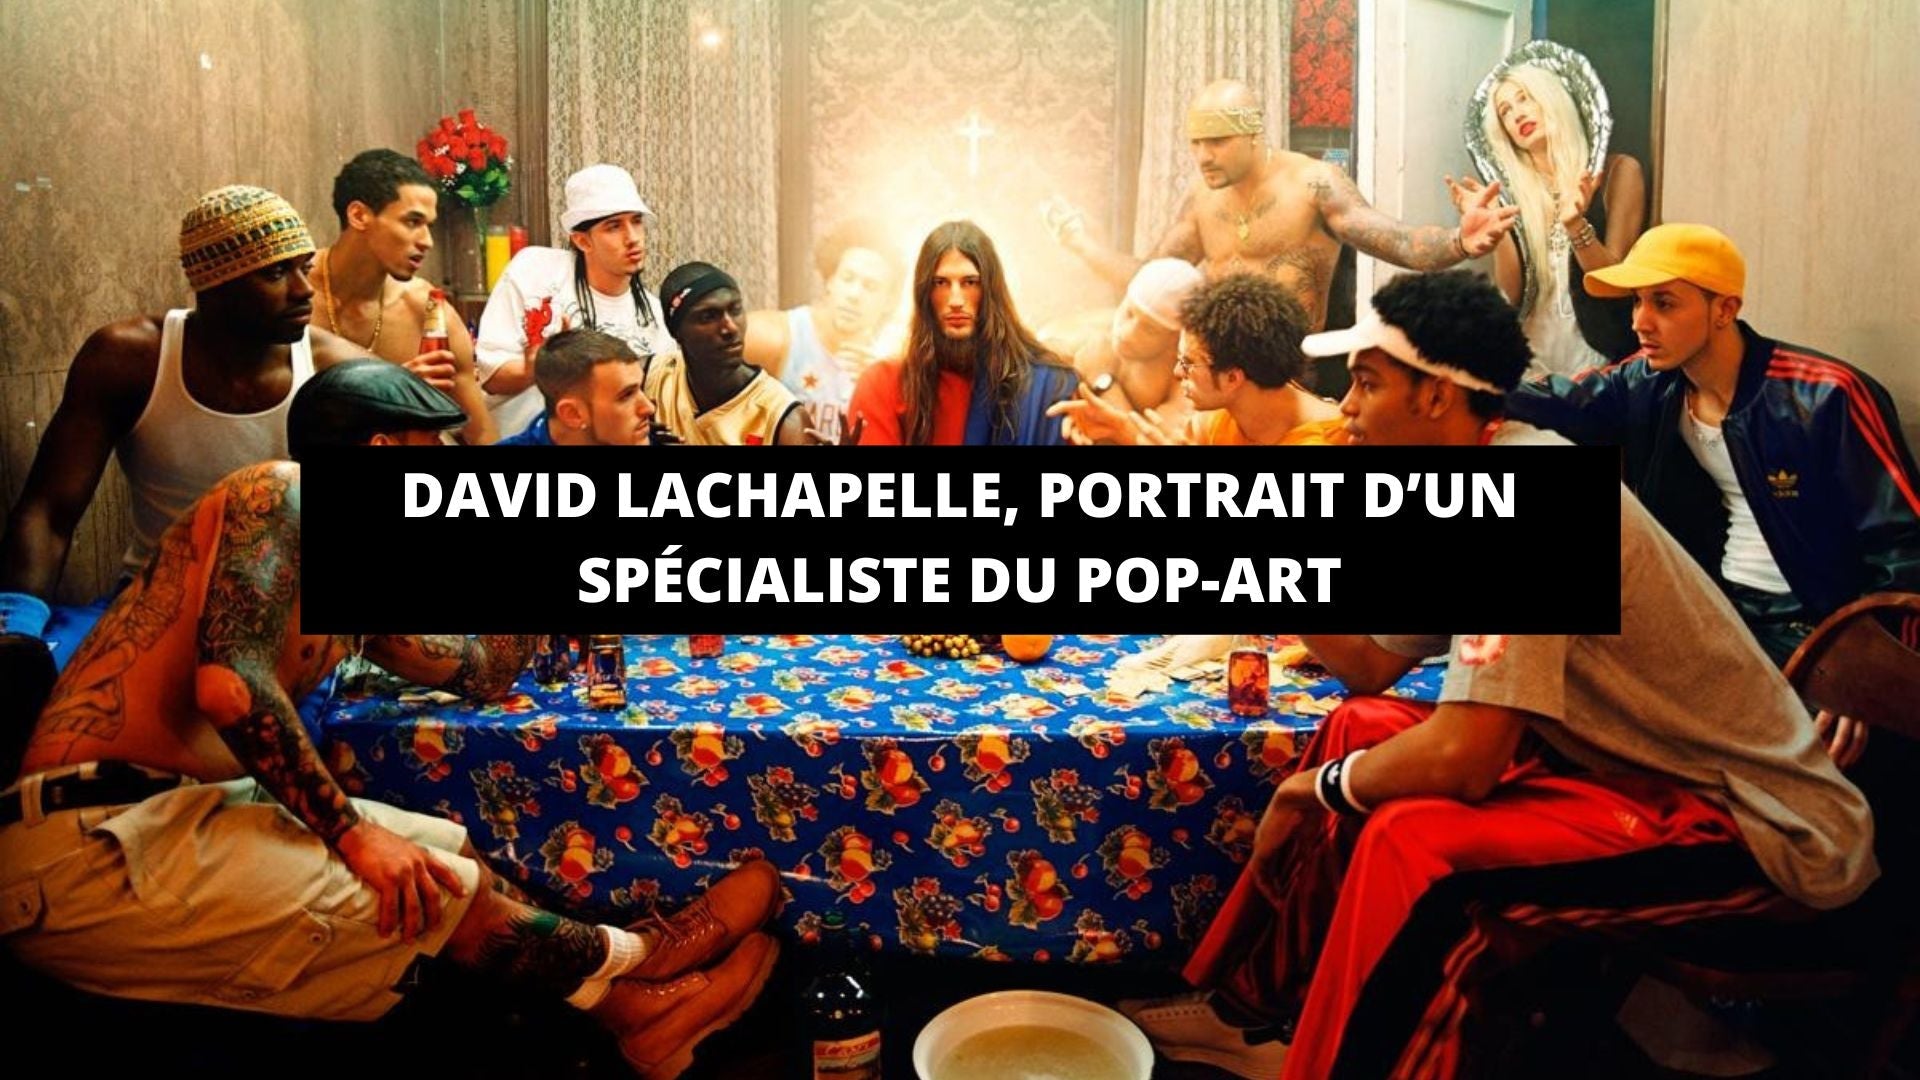 David LaChapelle, portrait d’un spécialiste du pop-art - The Art Avenue